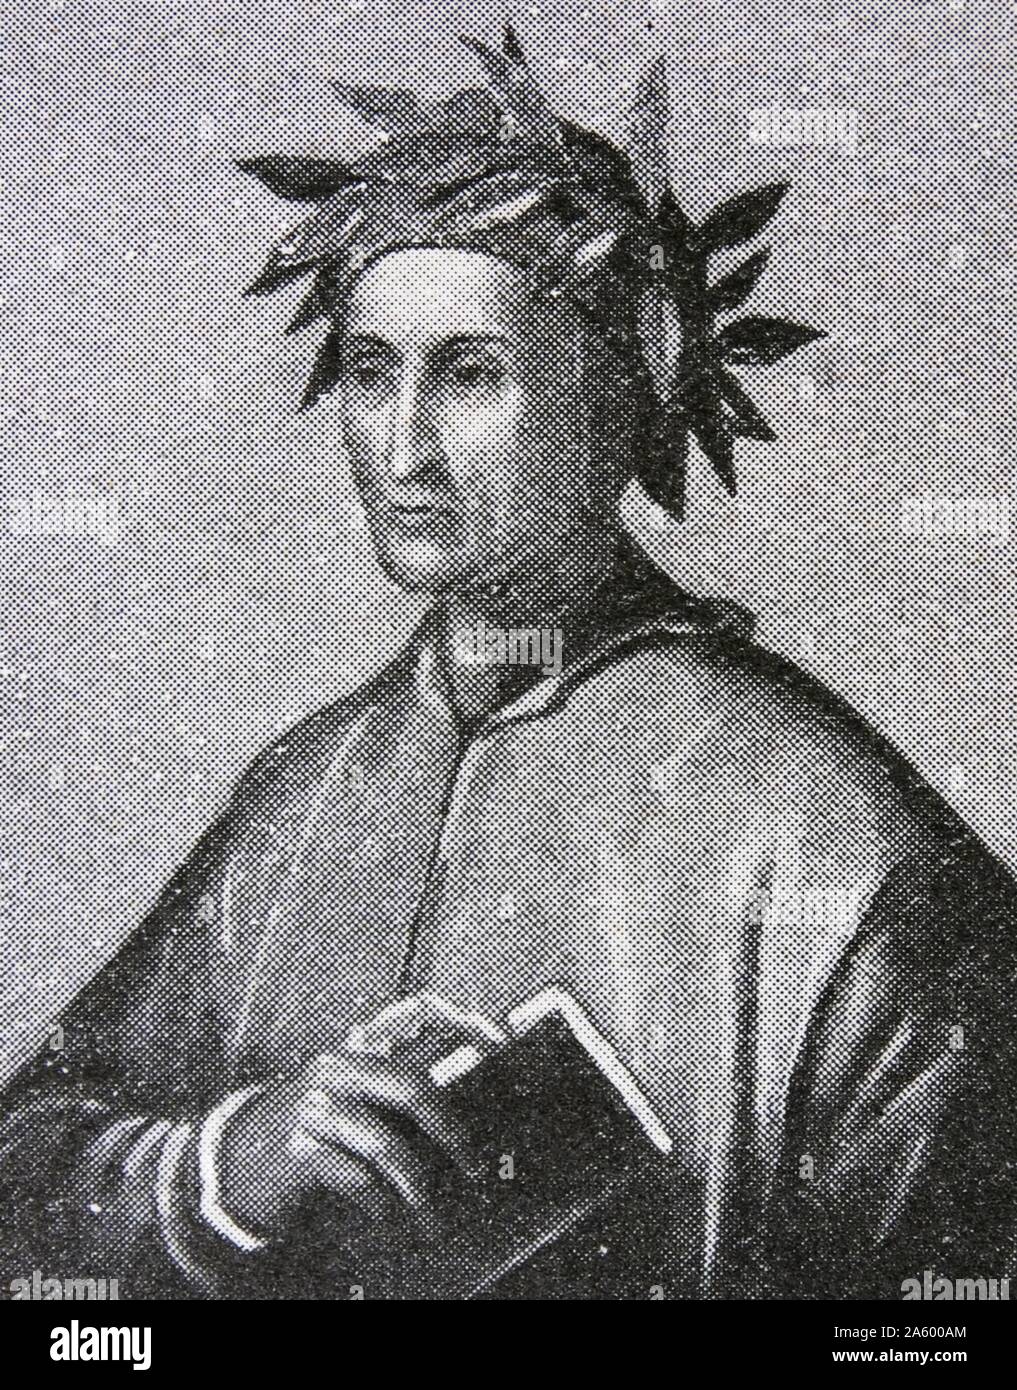 Porträt von Durante Degli Alighieri (1265-1321) italienischer Dichter des späten Mittelalters. Vom 14. Jahrhundert Stockfoto